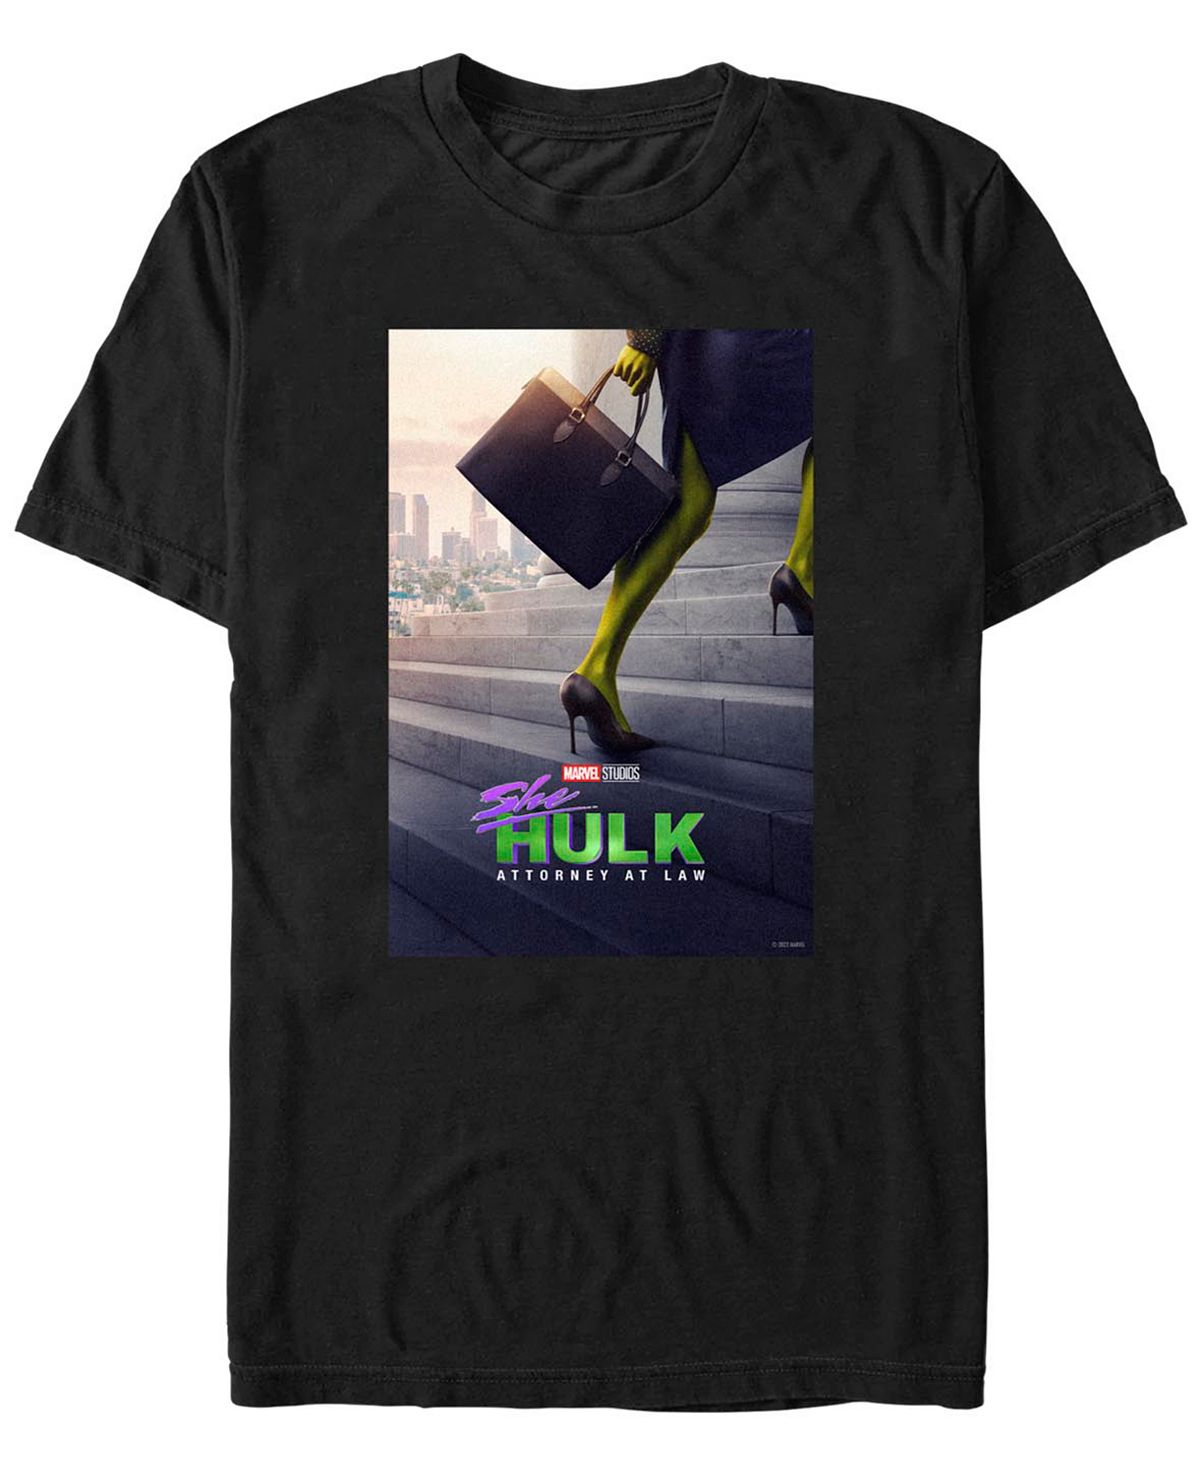 Мужская футболка с коротким рукавом с плакатом she hulk Fifth Sun, черный